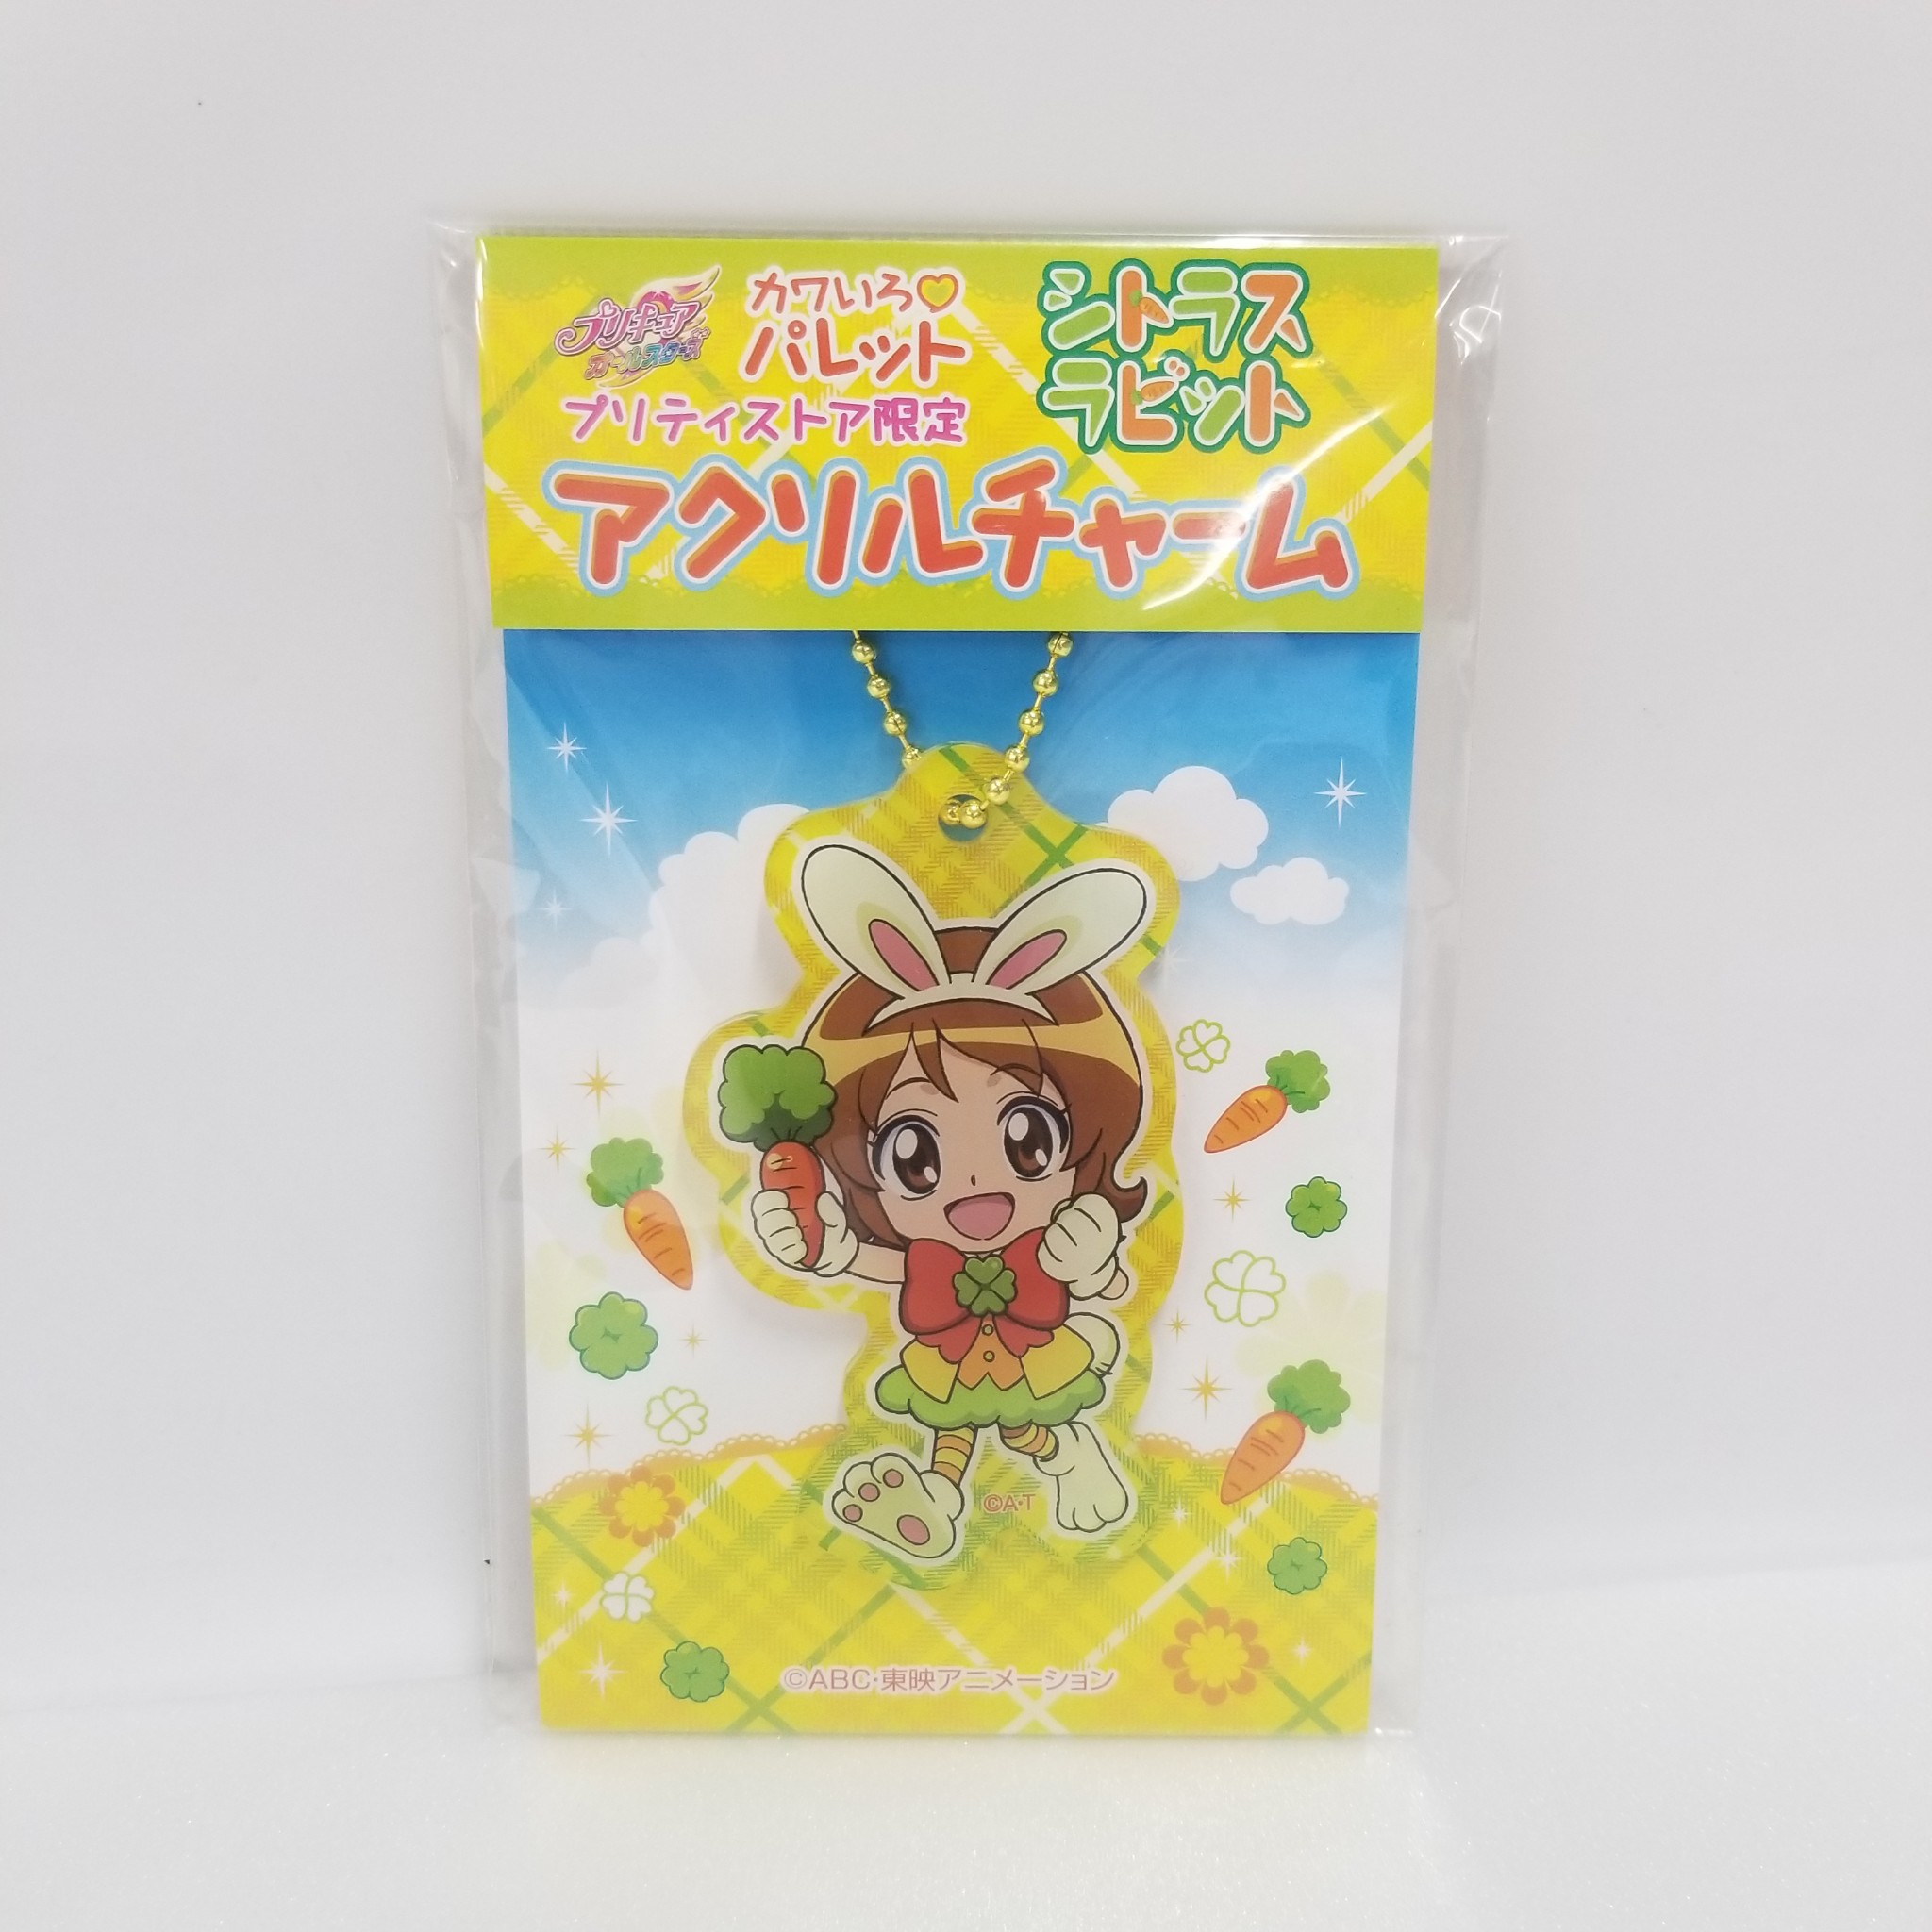 PreCure Pretty Store Osaka special Cutecolor♡Palette Citrus Rabbit Acrylic Charm - Yuko Ohmori